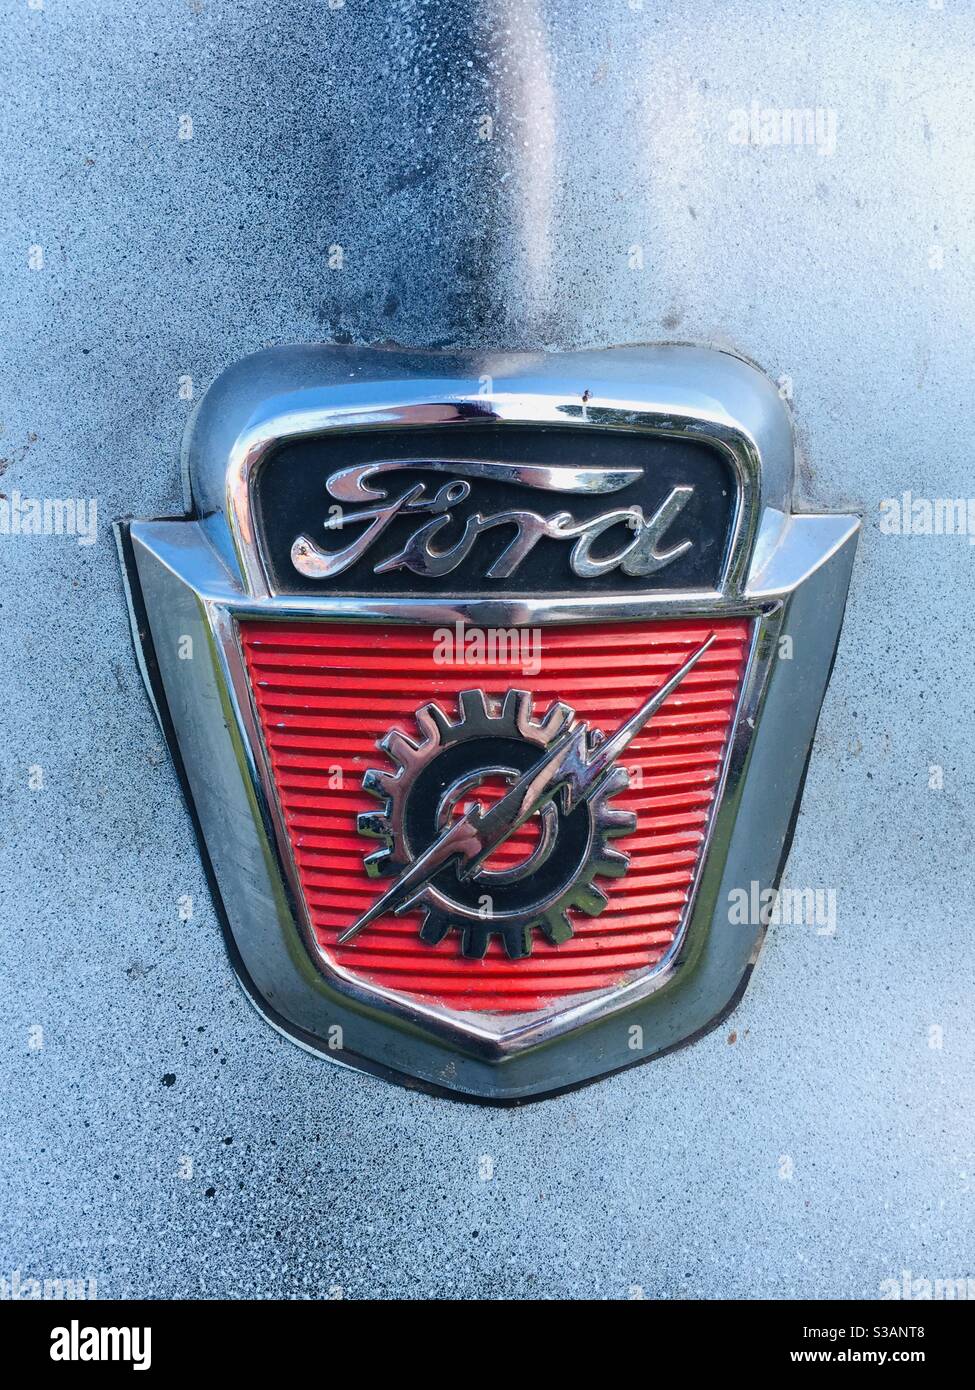 F100 Ford kurze Bett LKW-Abzeichen in Chrom, schwarz und rot auf einer blauen Motorhaube Stockfoto